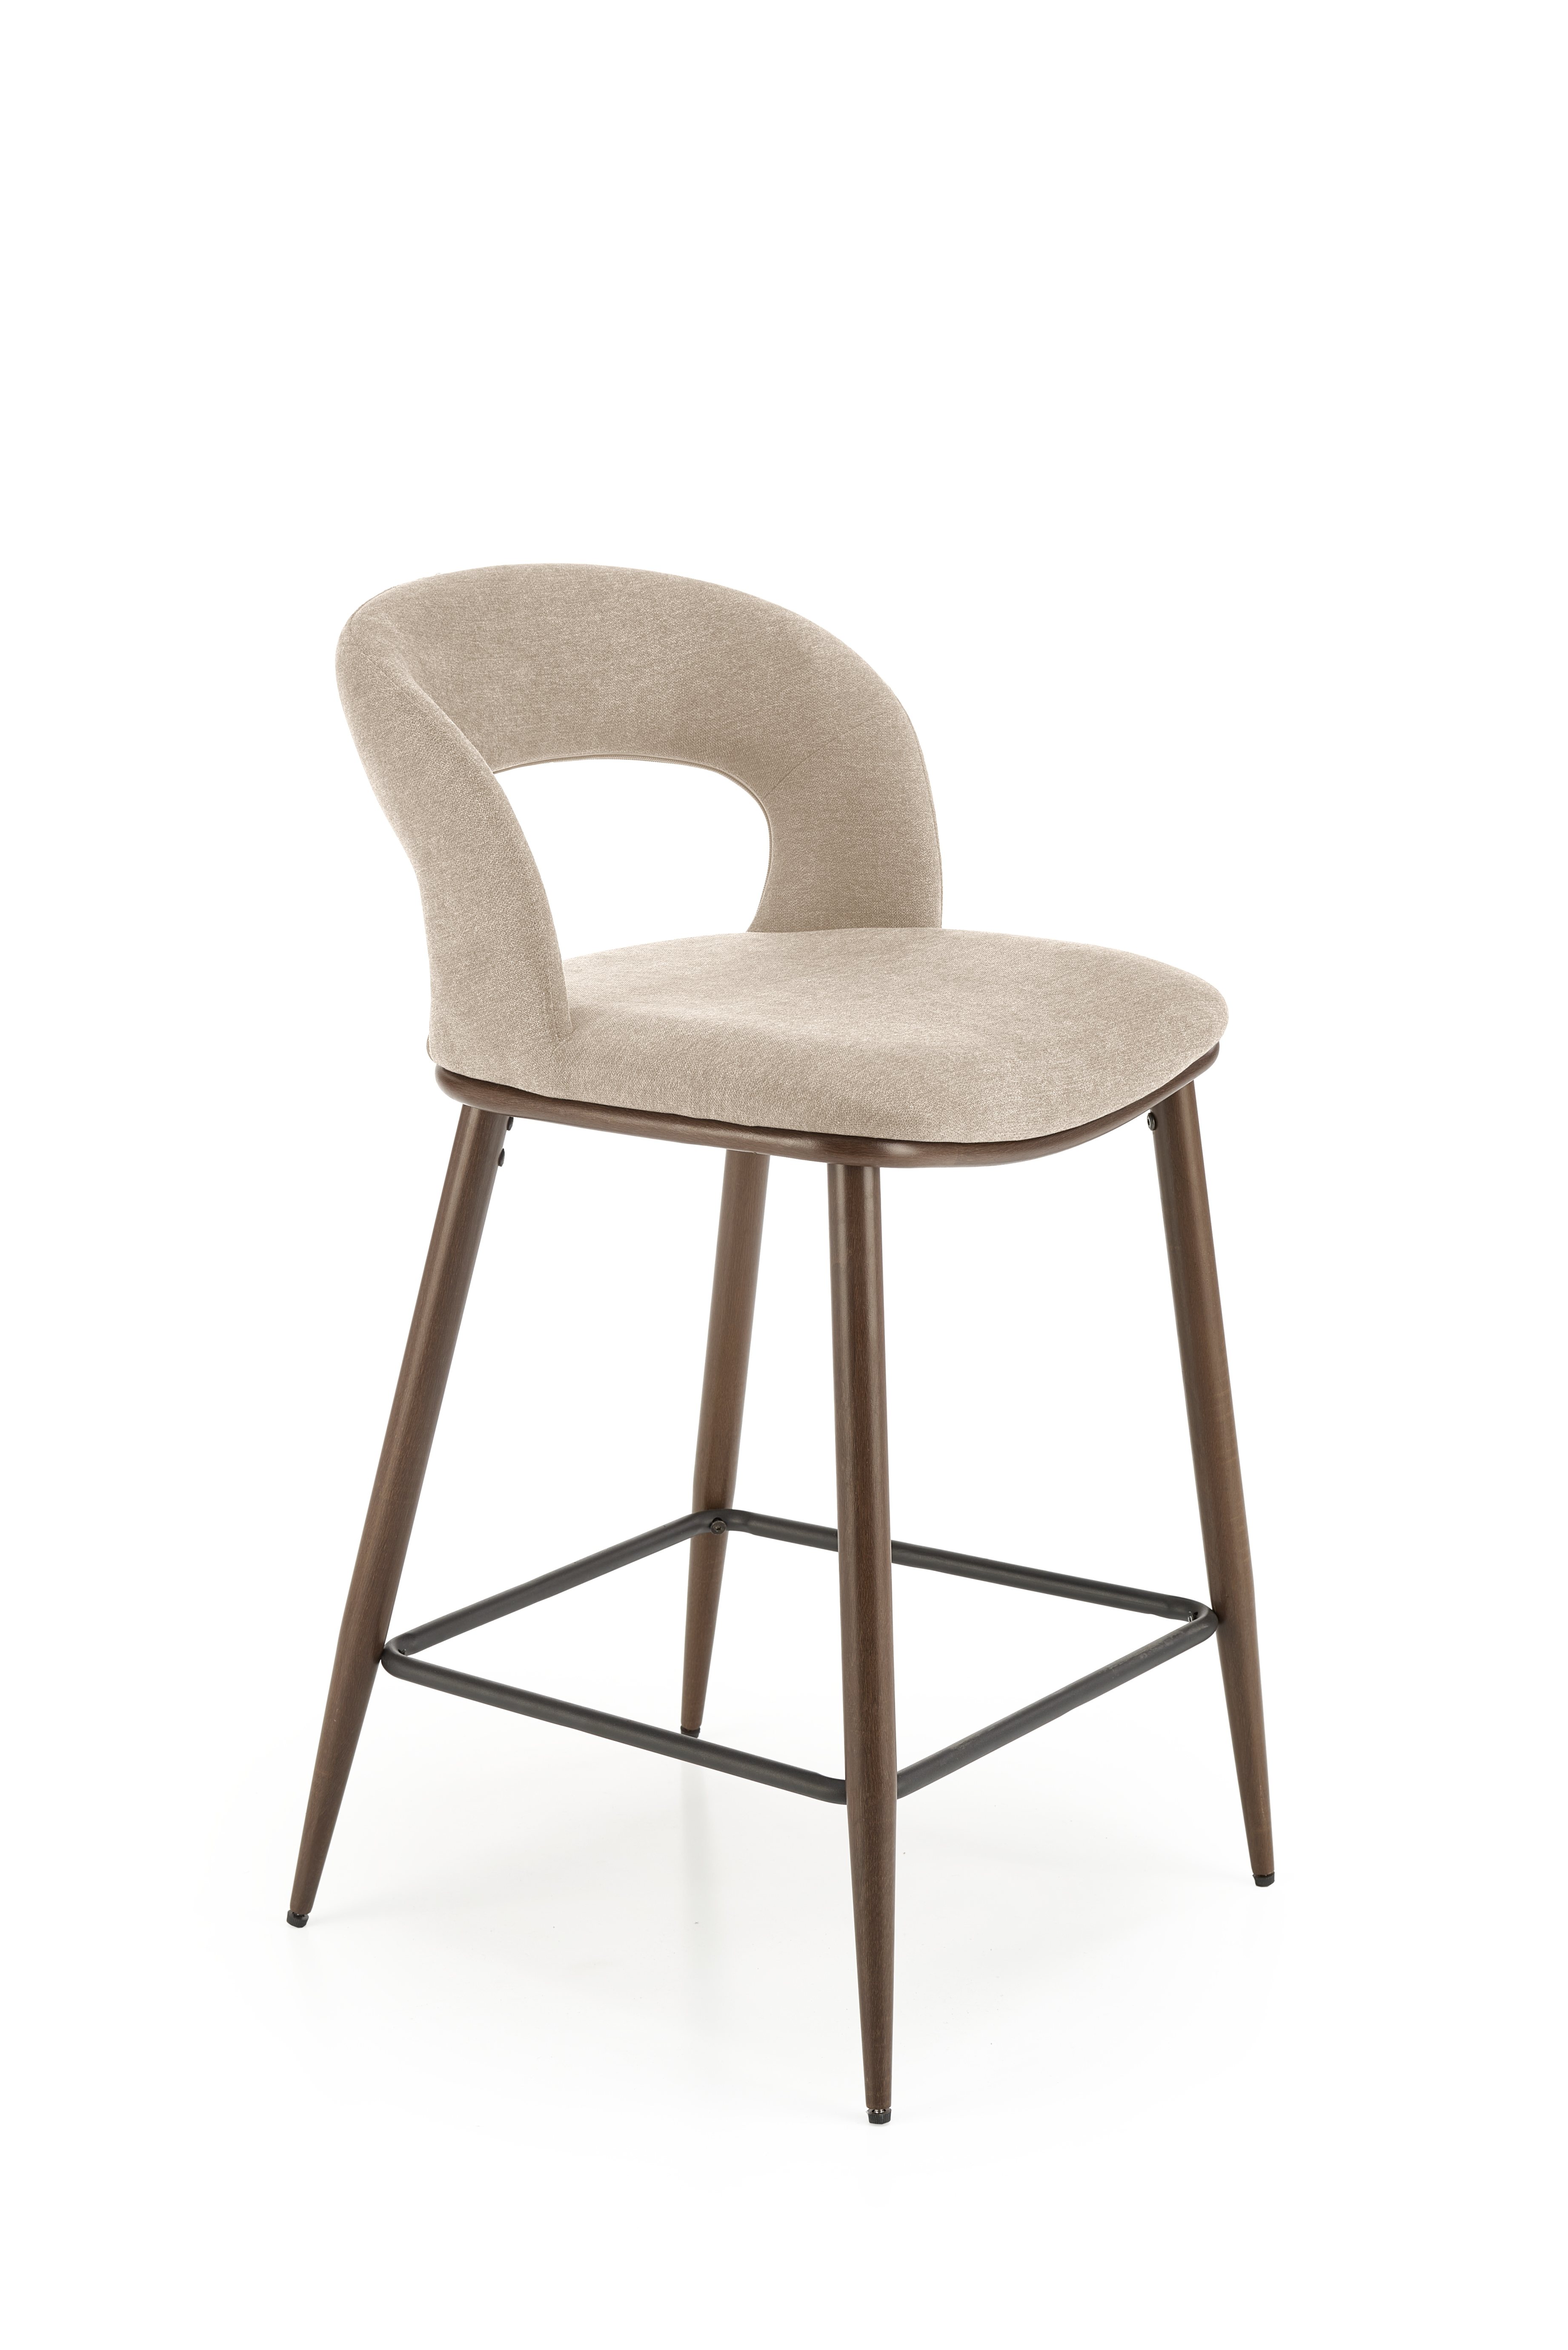 H114 Barová židle béžový / ořechový h114 Barová židle béžový / ořechový